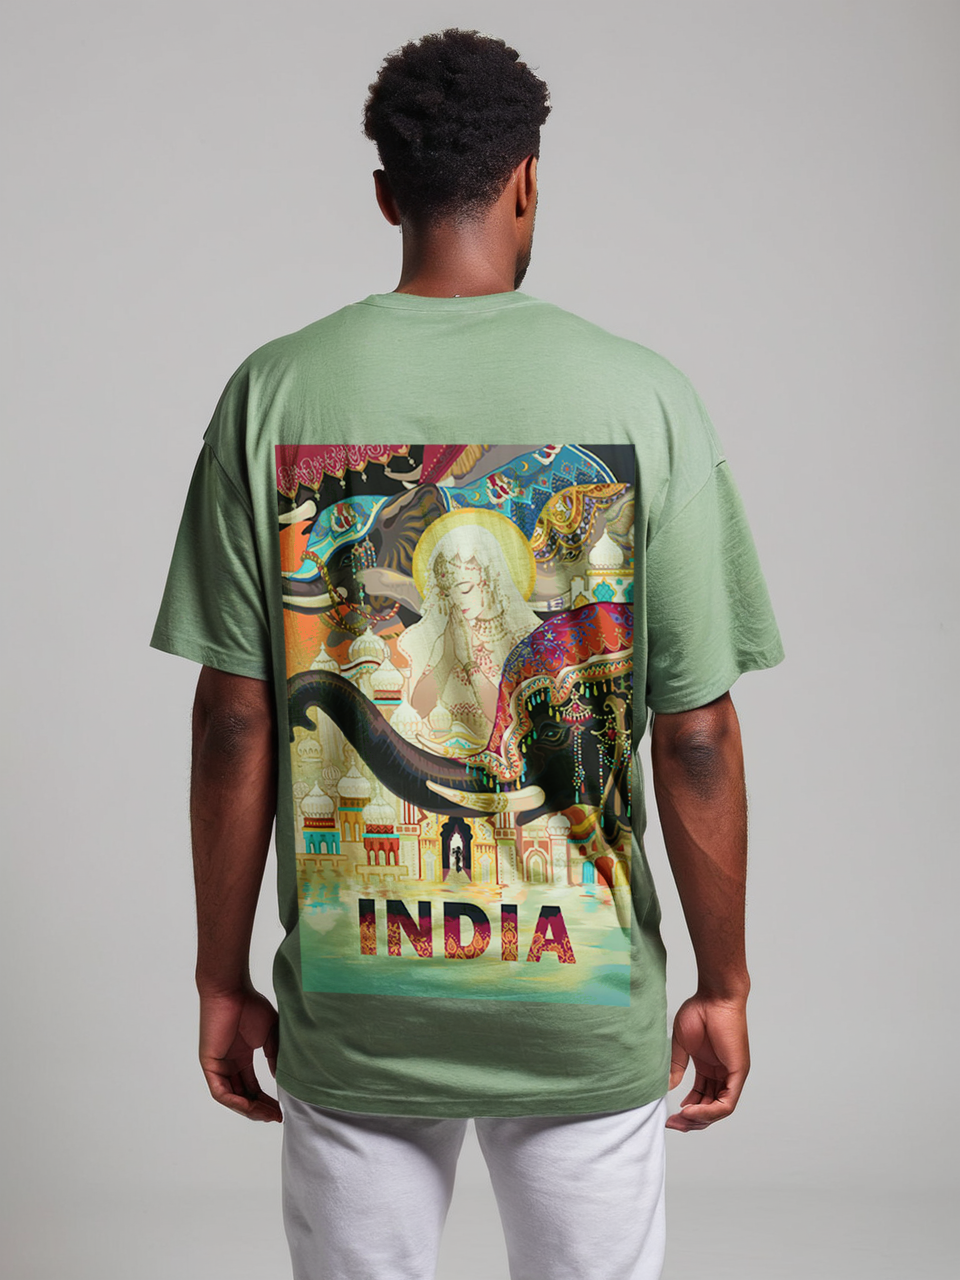 India oversize T-shirt, closeup